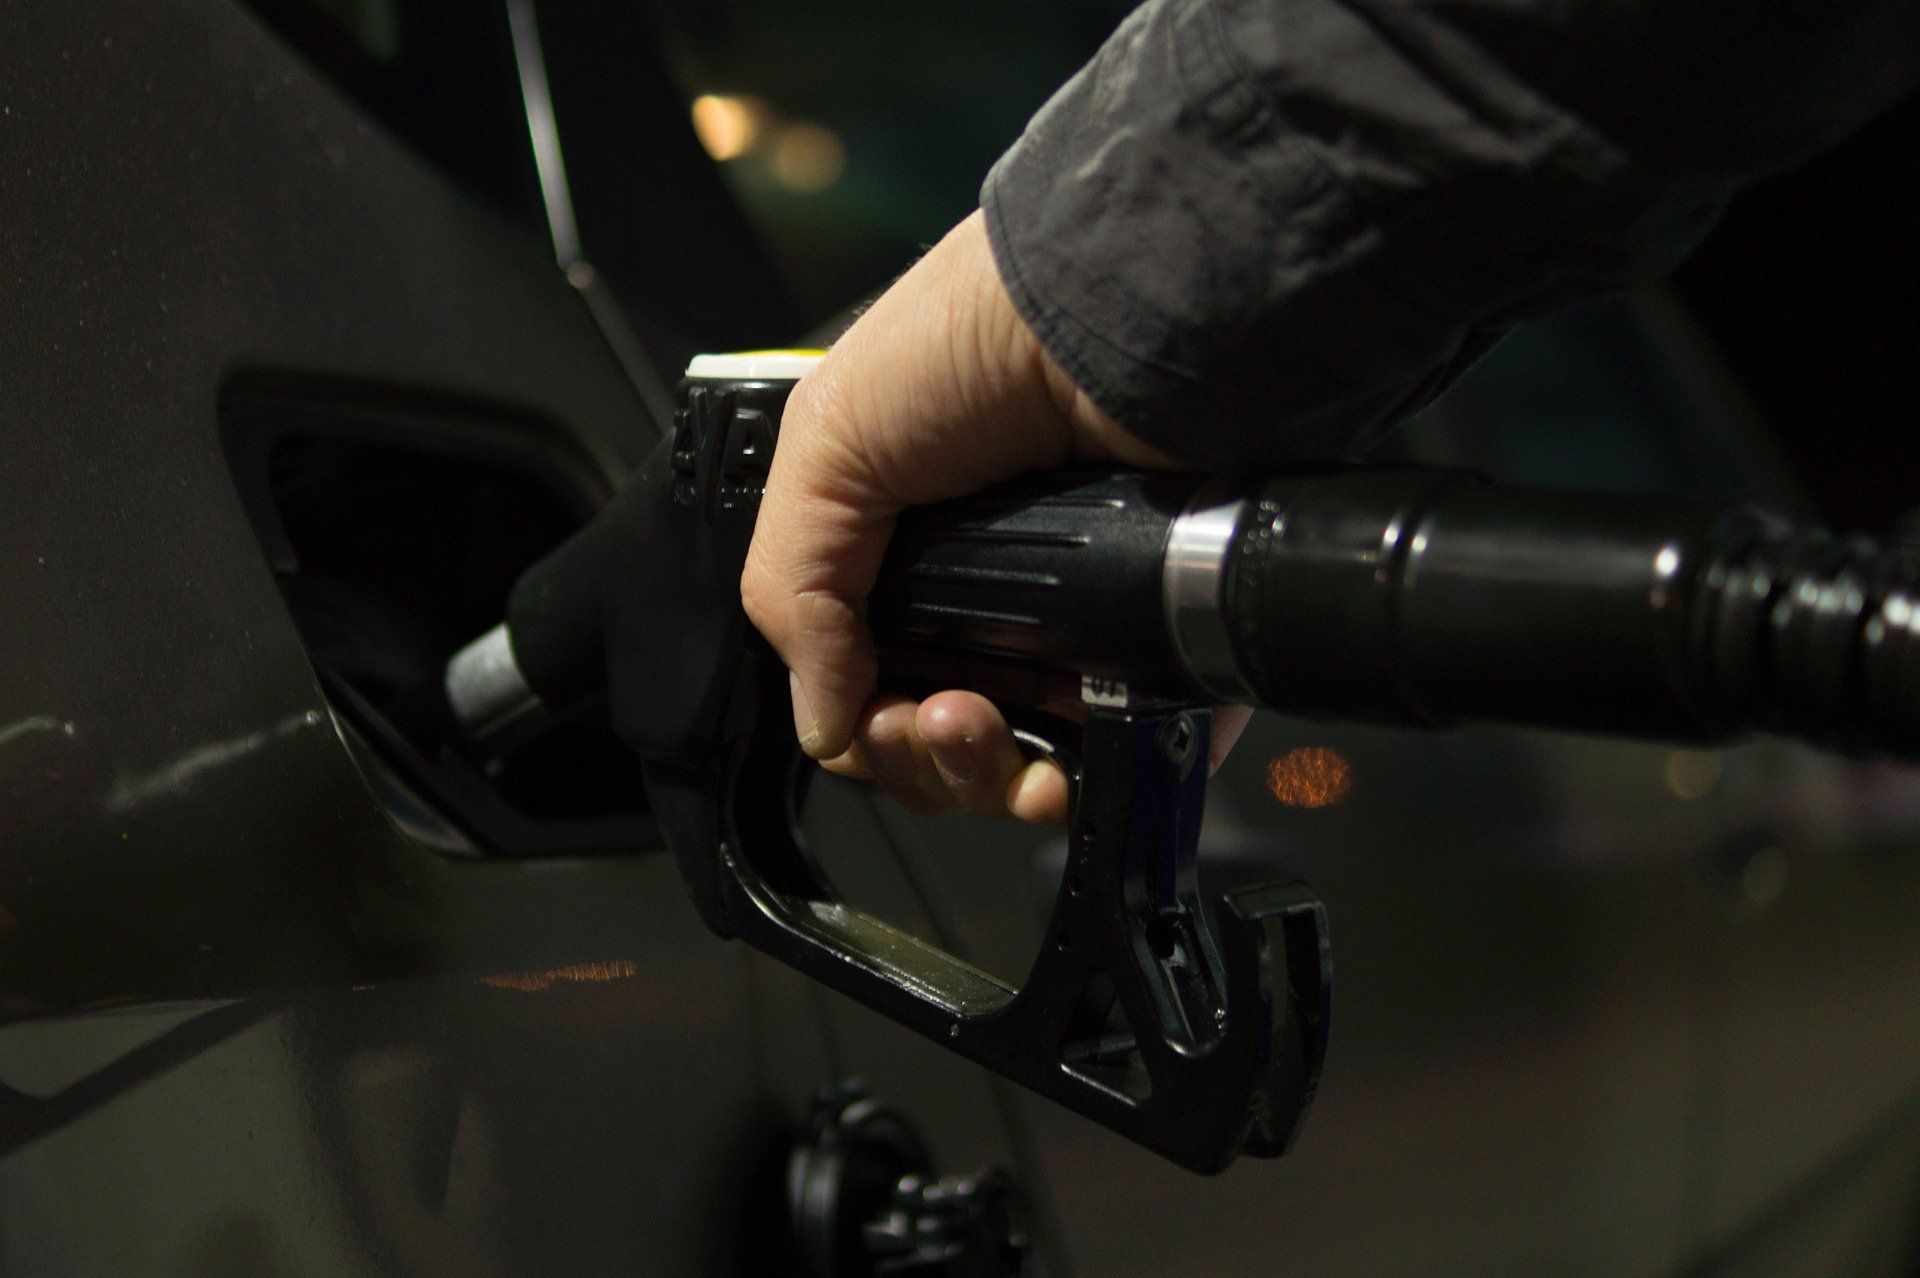 Fuel price May 30, 2022: Petrol Rs 96.72, diesel Rs 89.62 in Delhi